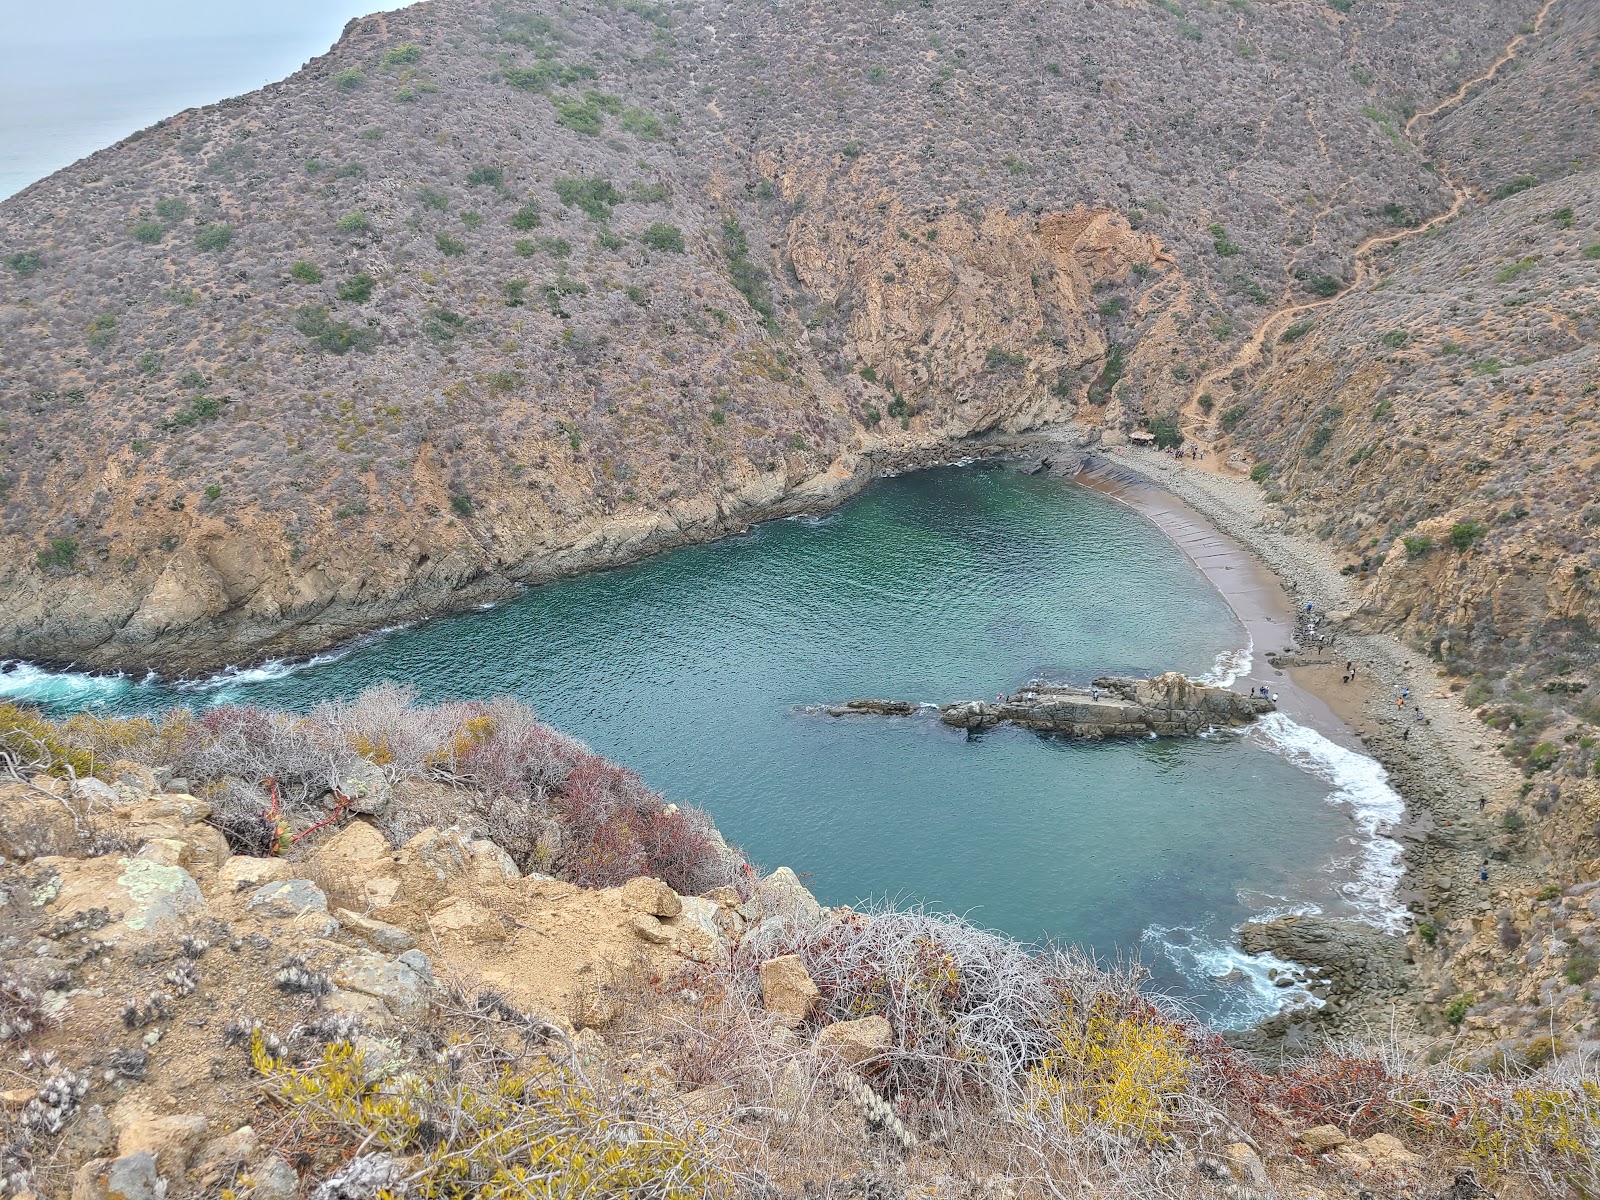 Playa el Cocodrilo'in fotoğrafı parlak kum ve kayalar yüzey ile